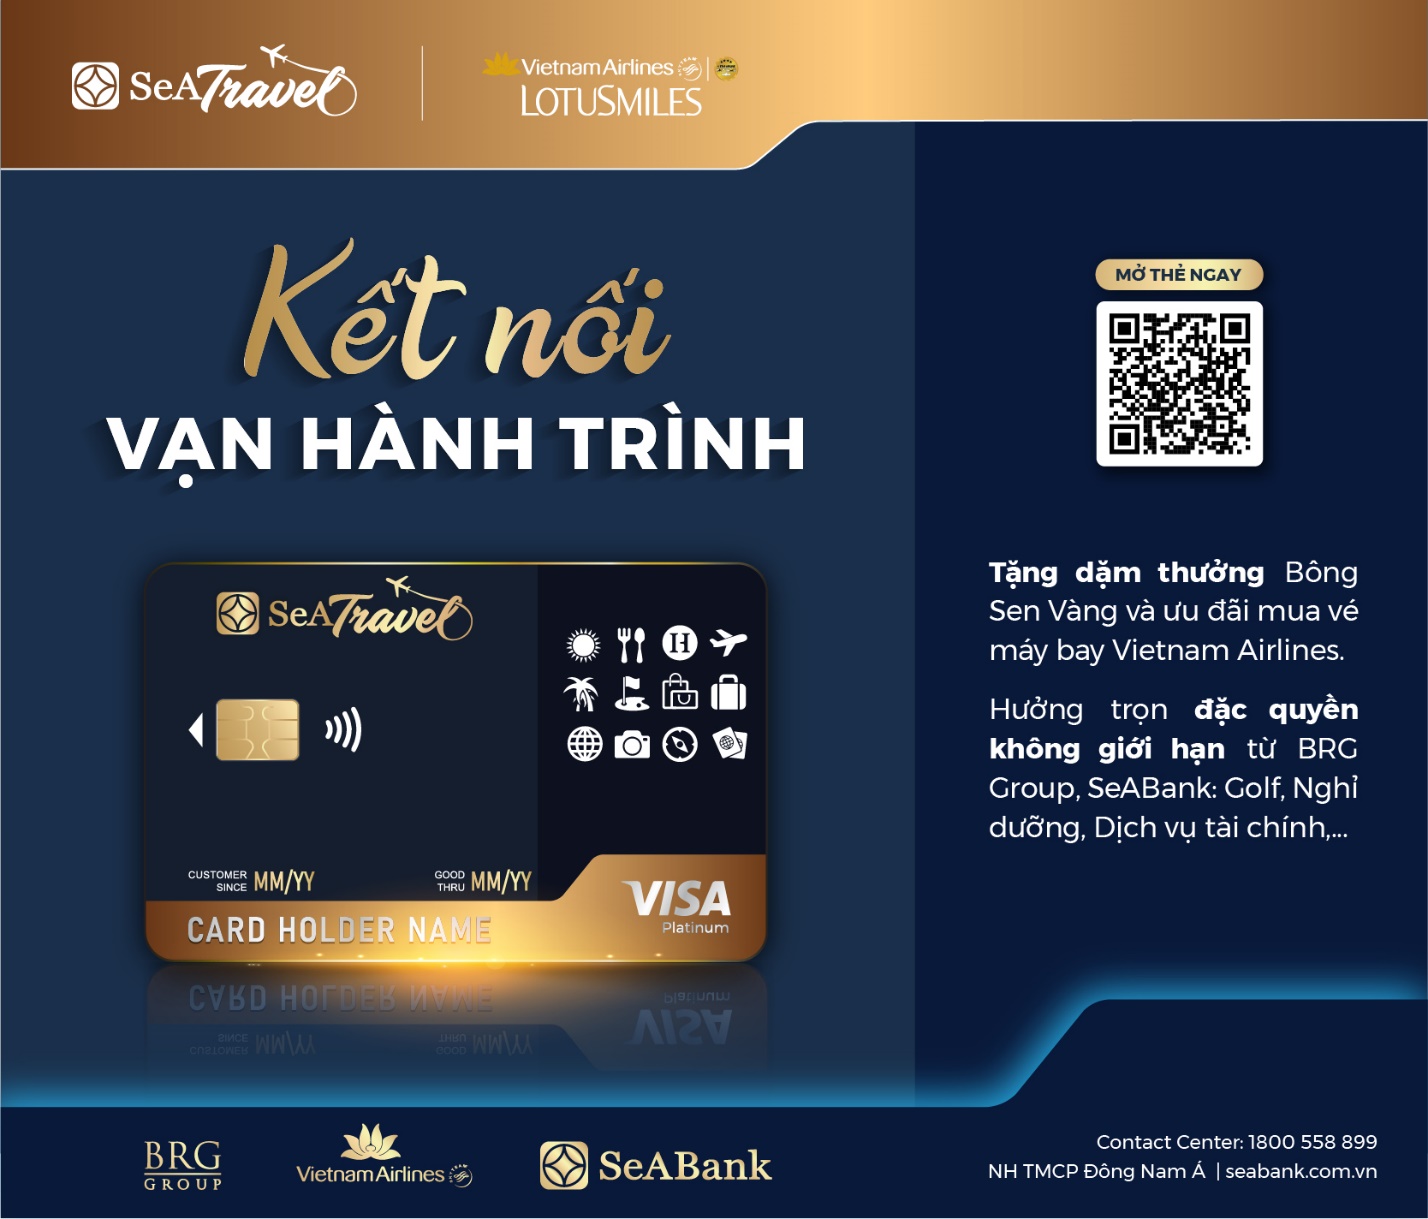 SeABank, Tập đoàn BRG và Vietnam Airlines ra mắt thẻ đồng thương hiệu SeATravel  - Ảnh 2.